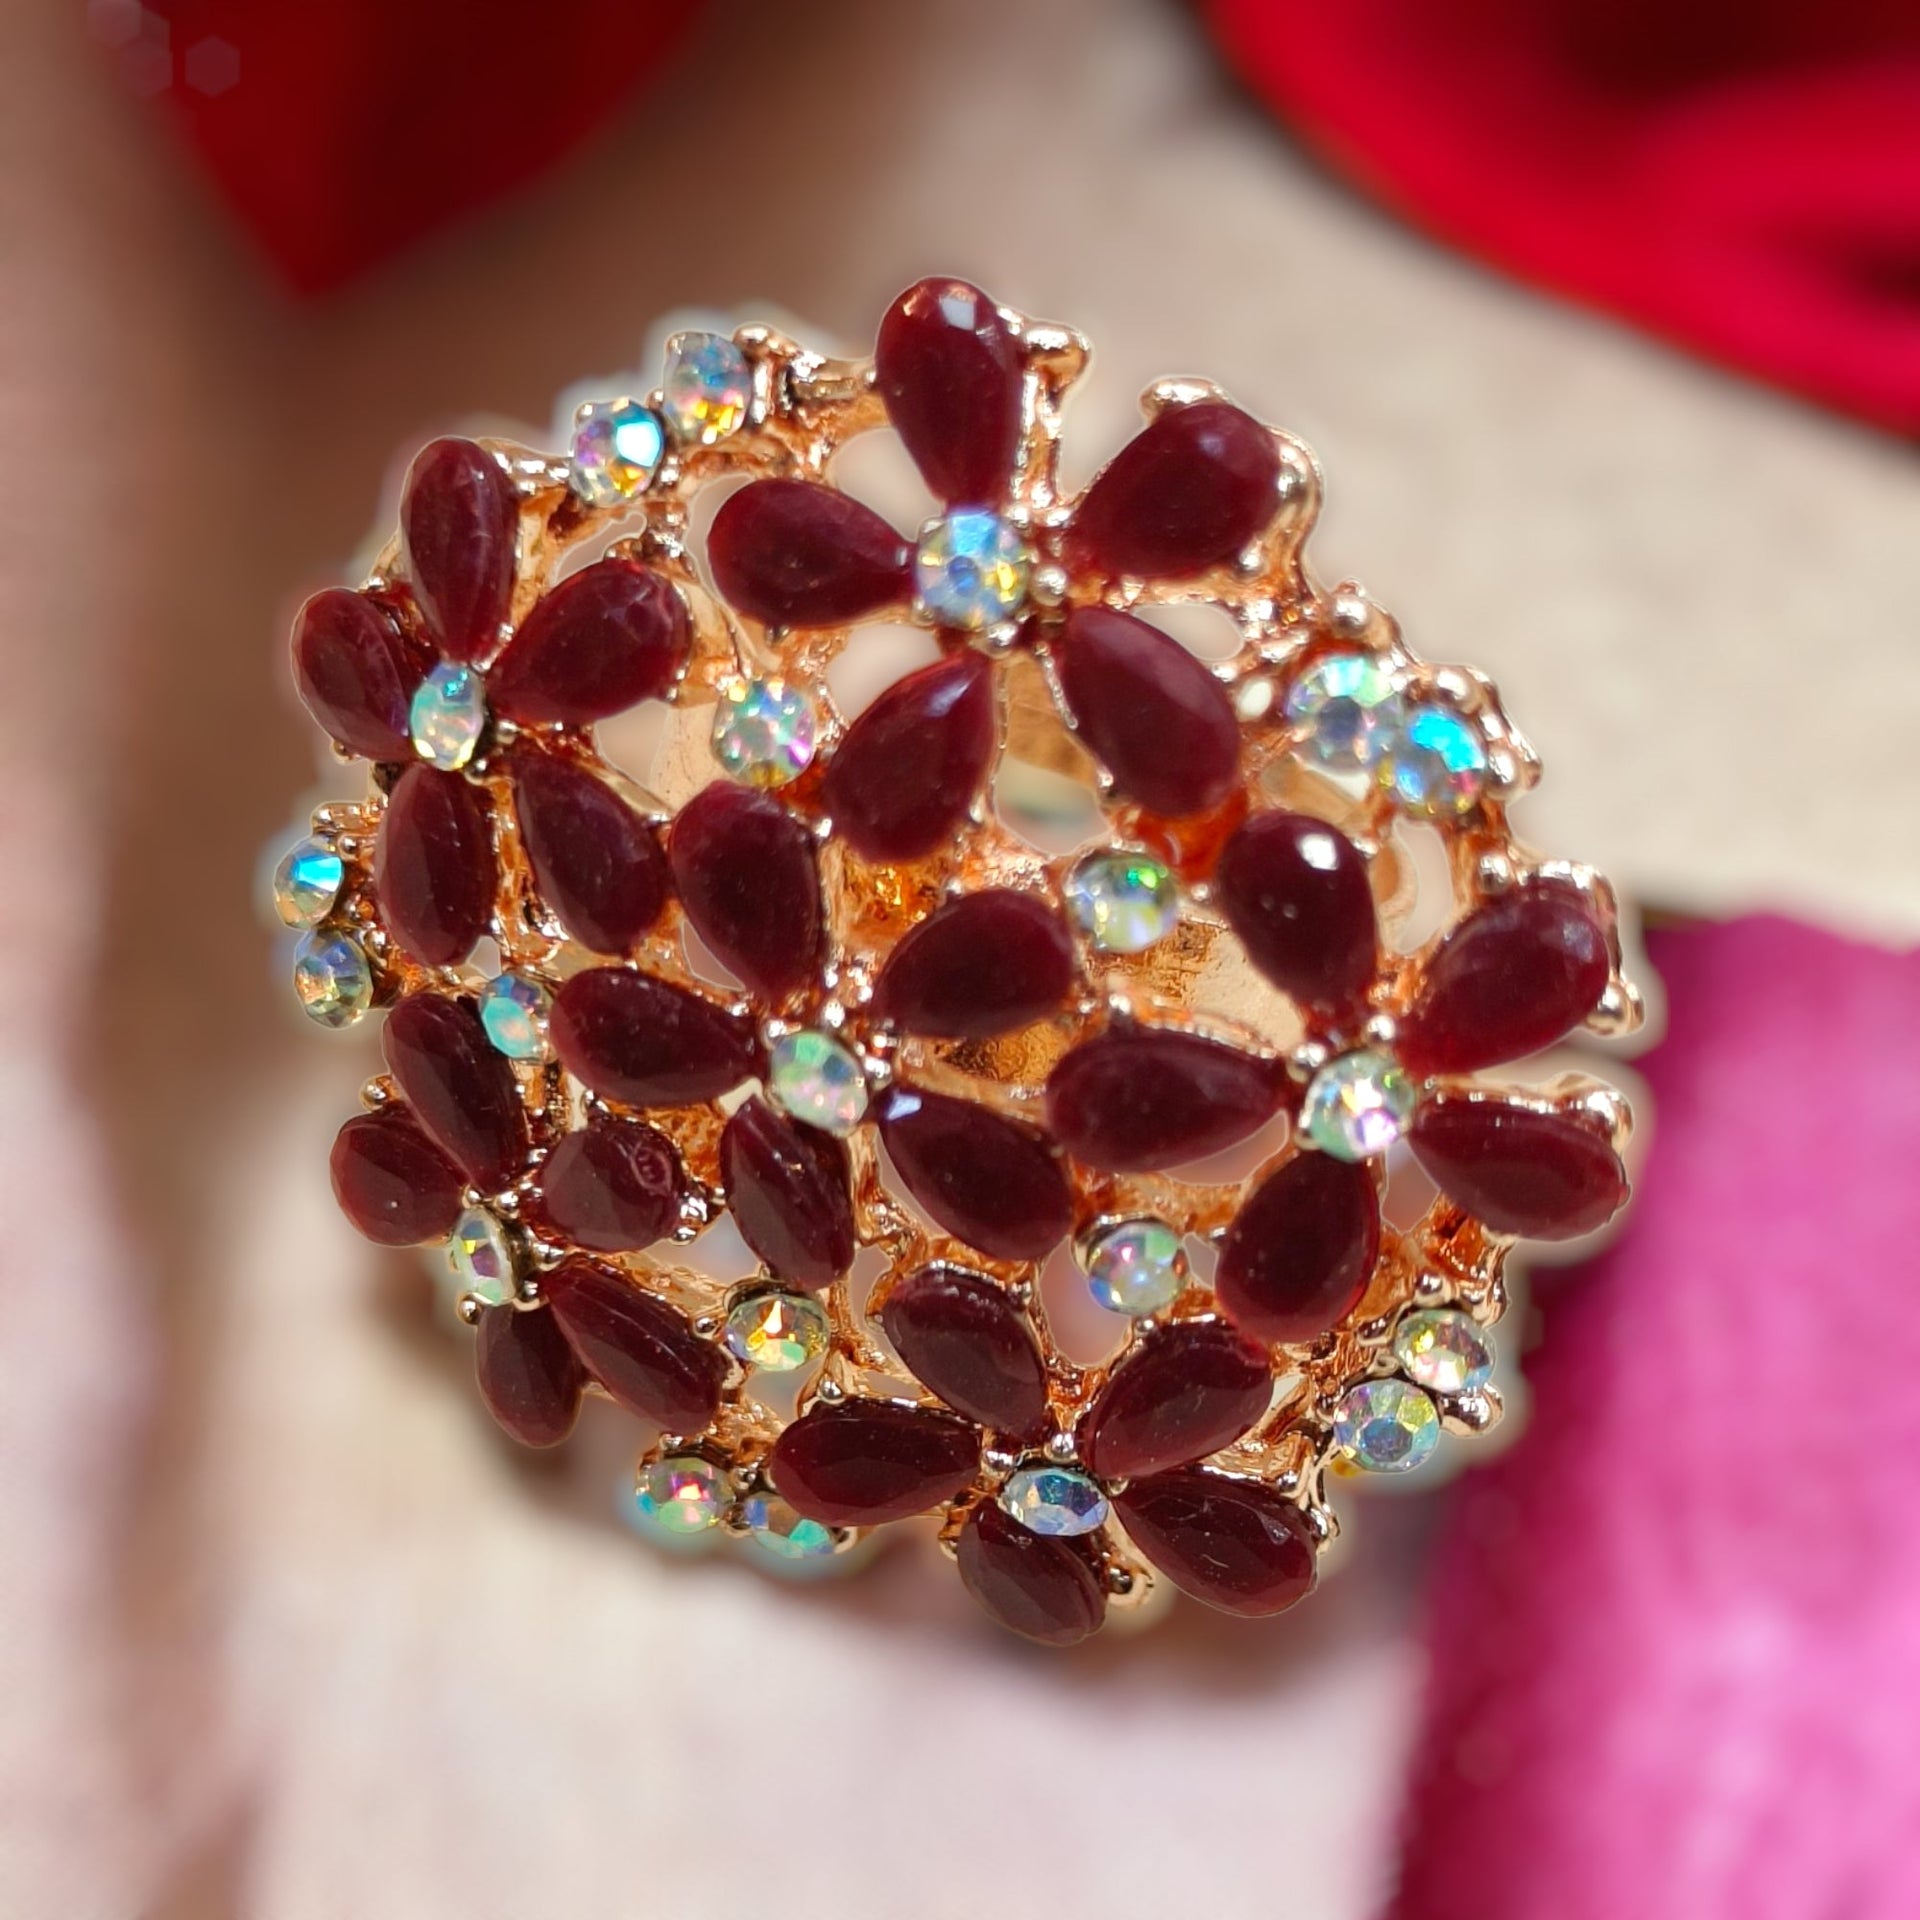 Flower Design Emerald Red Adjustable Crystal Ring Colour – Kalash